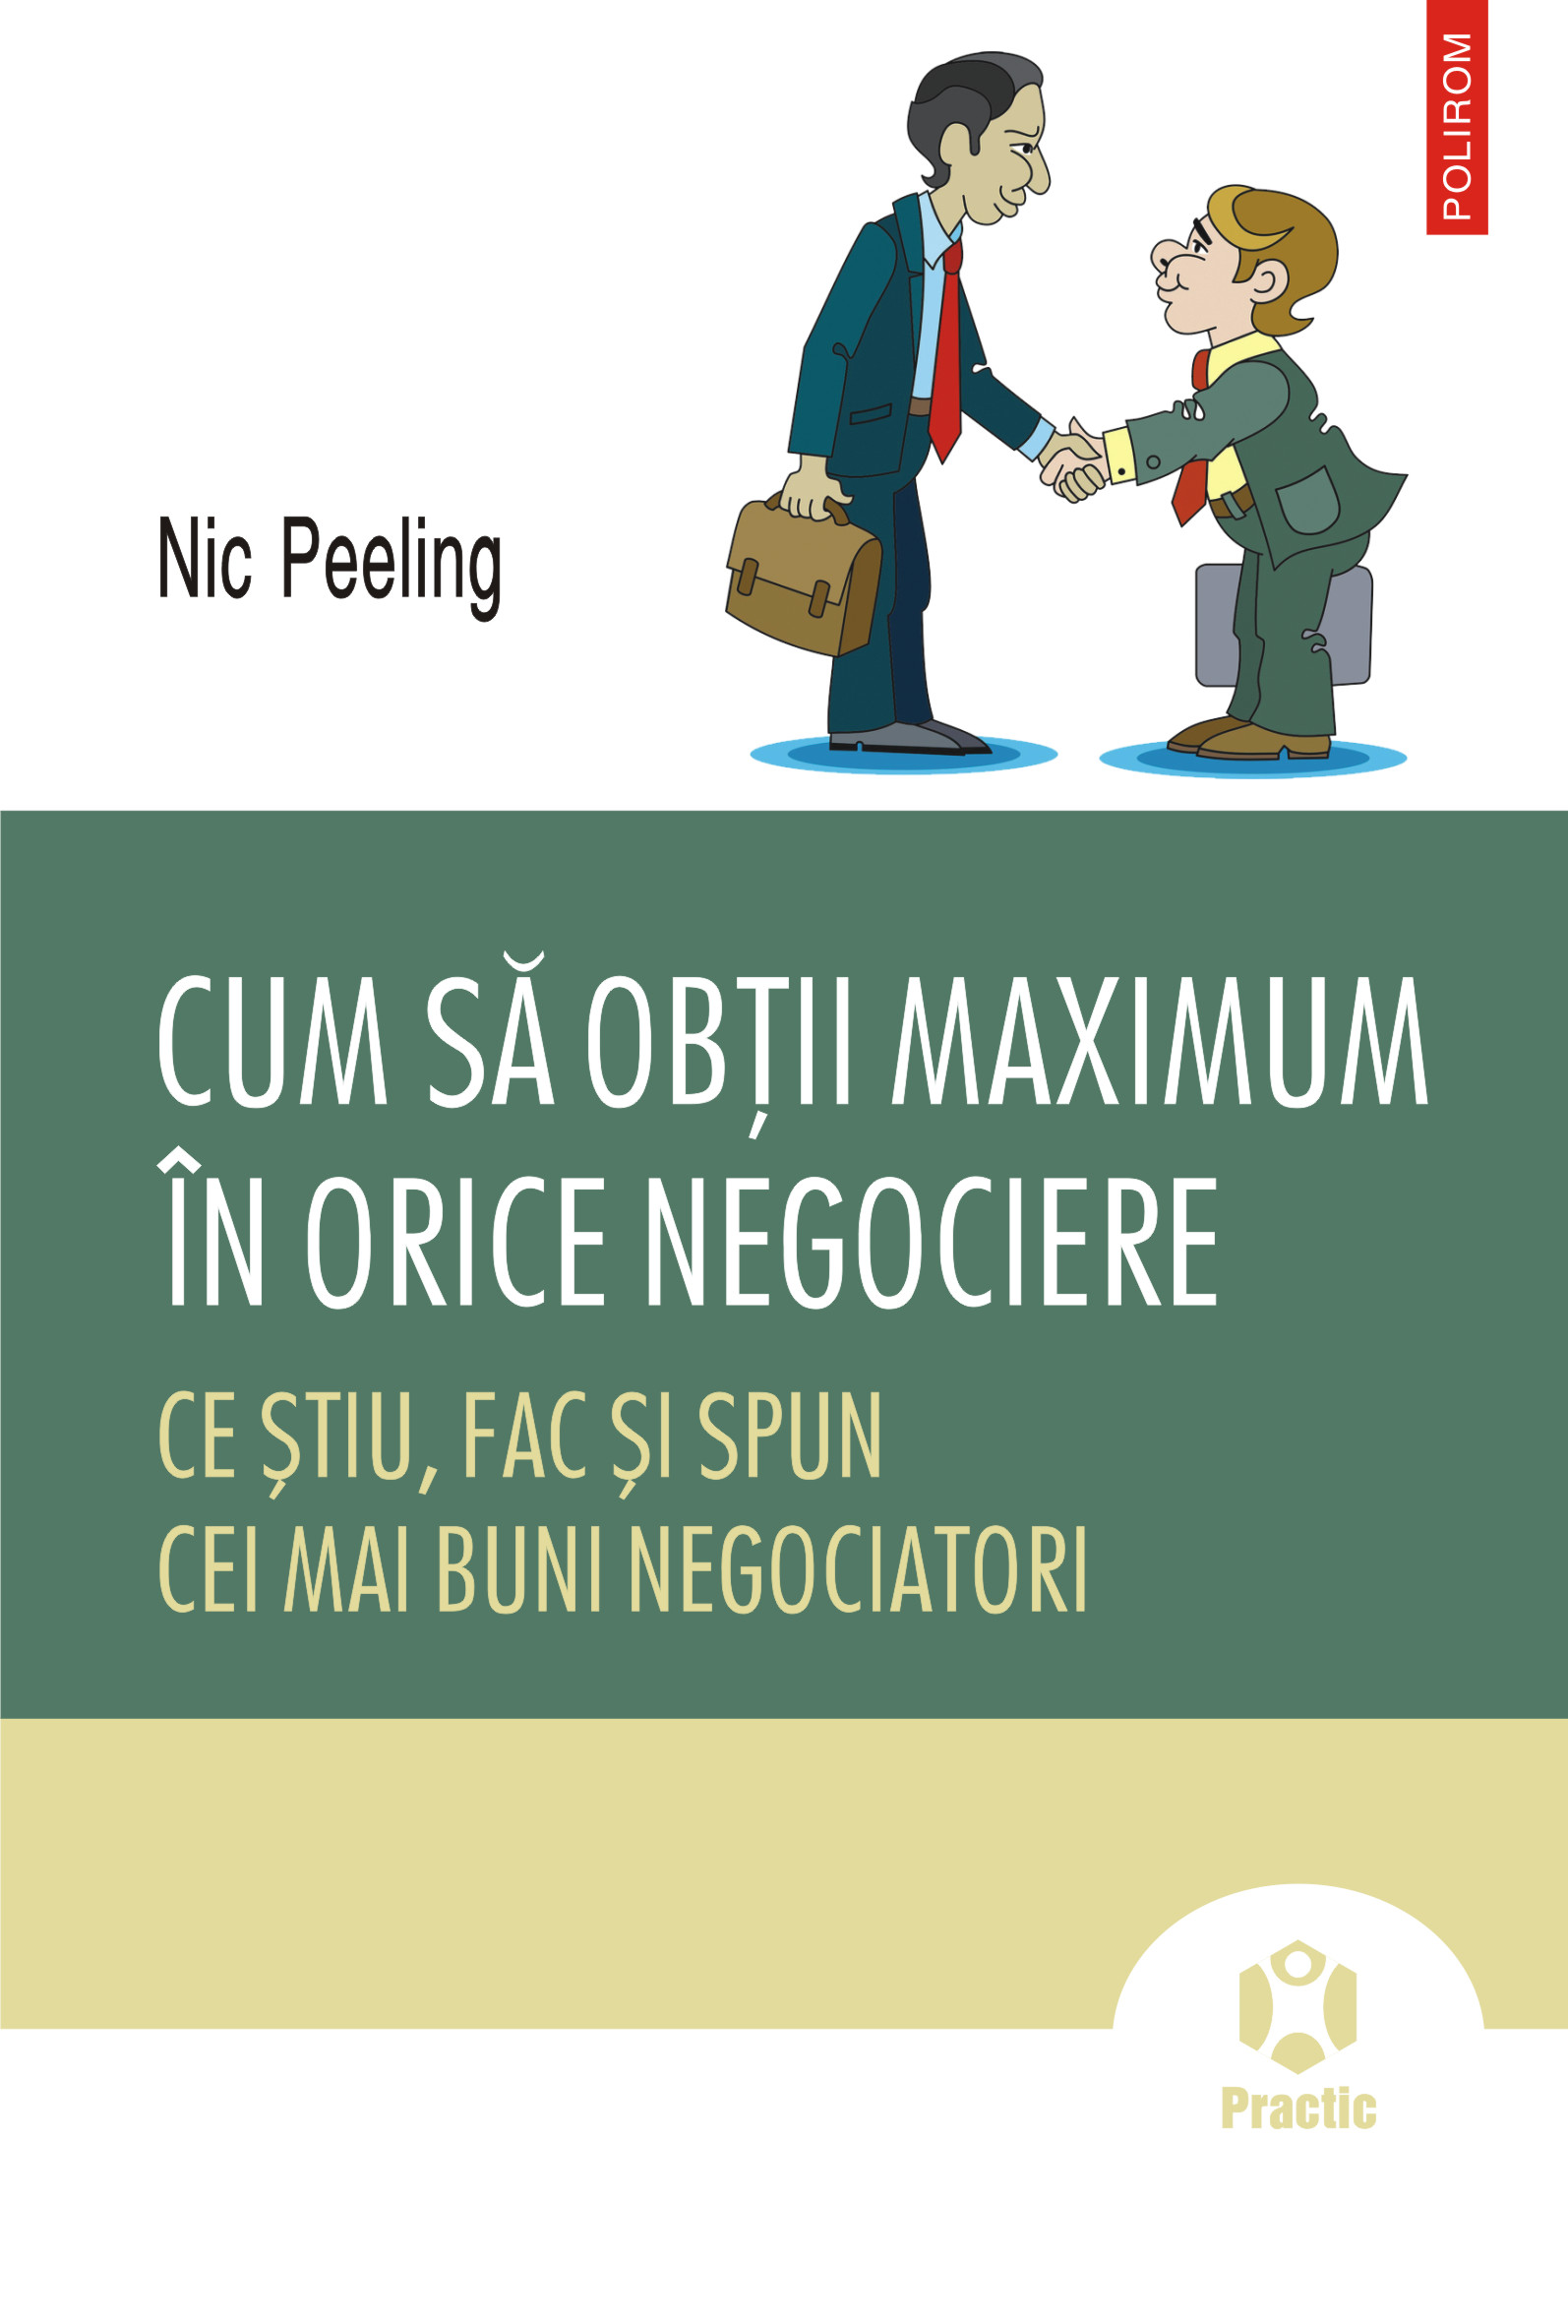 eBook Cum sa obtii maximum in orice negociere - Nic Peeling